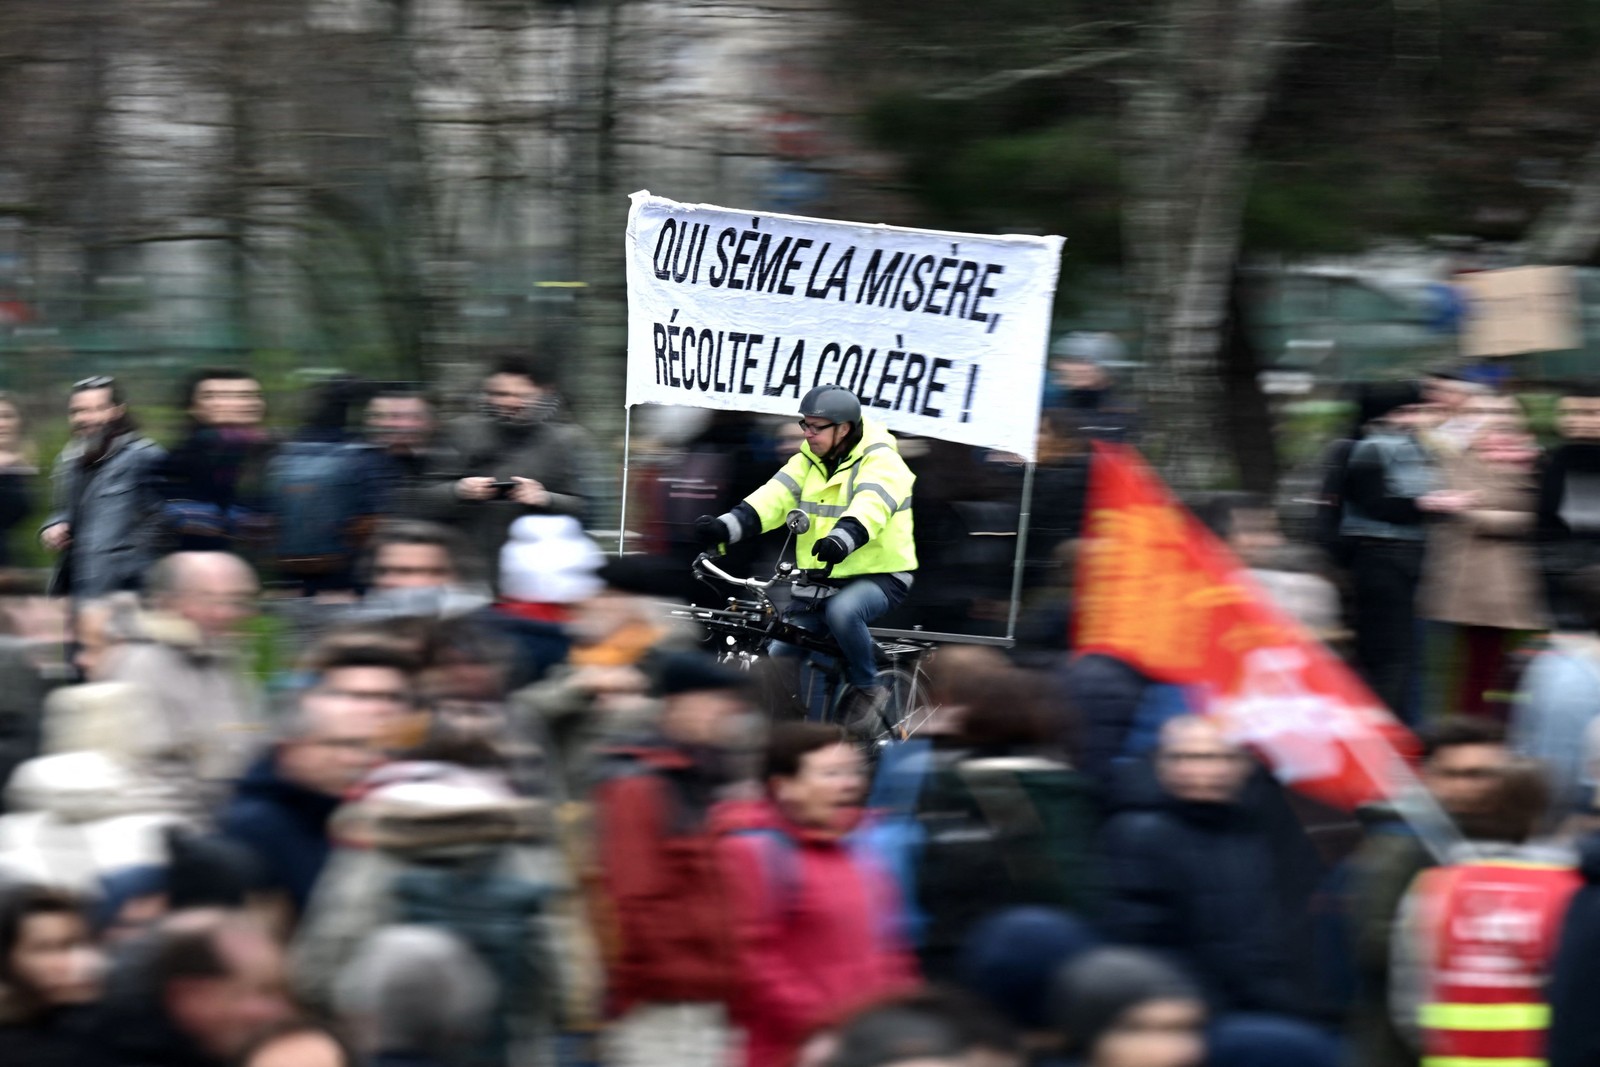 "Quem semeia a miséria, colhe a revolta", diz o cartaz no segundo dia de greve geral contra a reforma da previdência da França, em Nantes — Foto: LOIC VENANCE/AFP